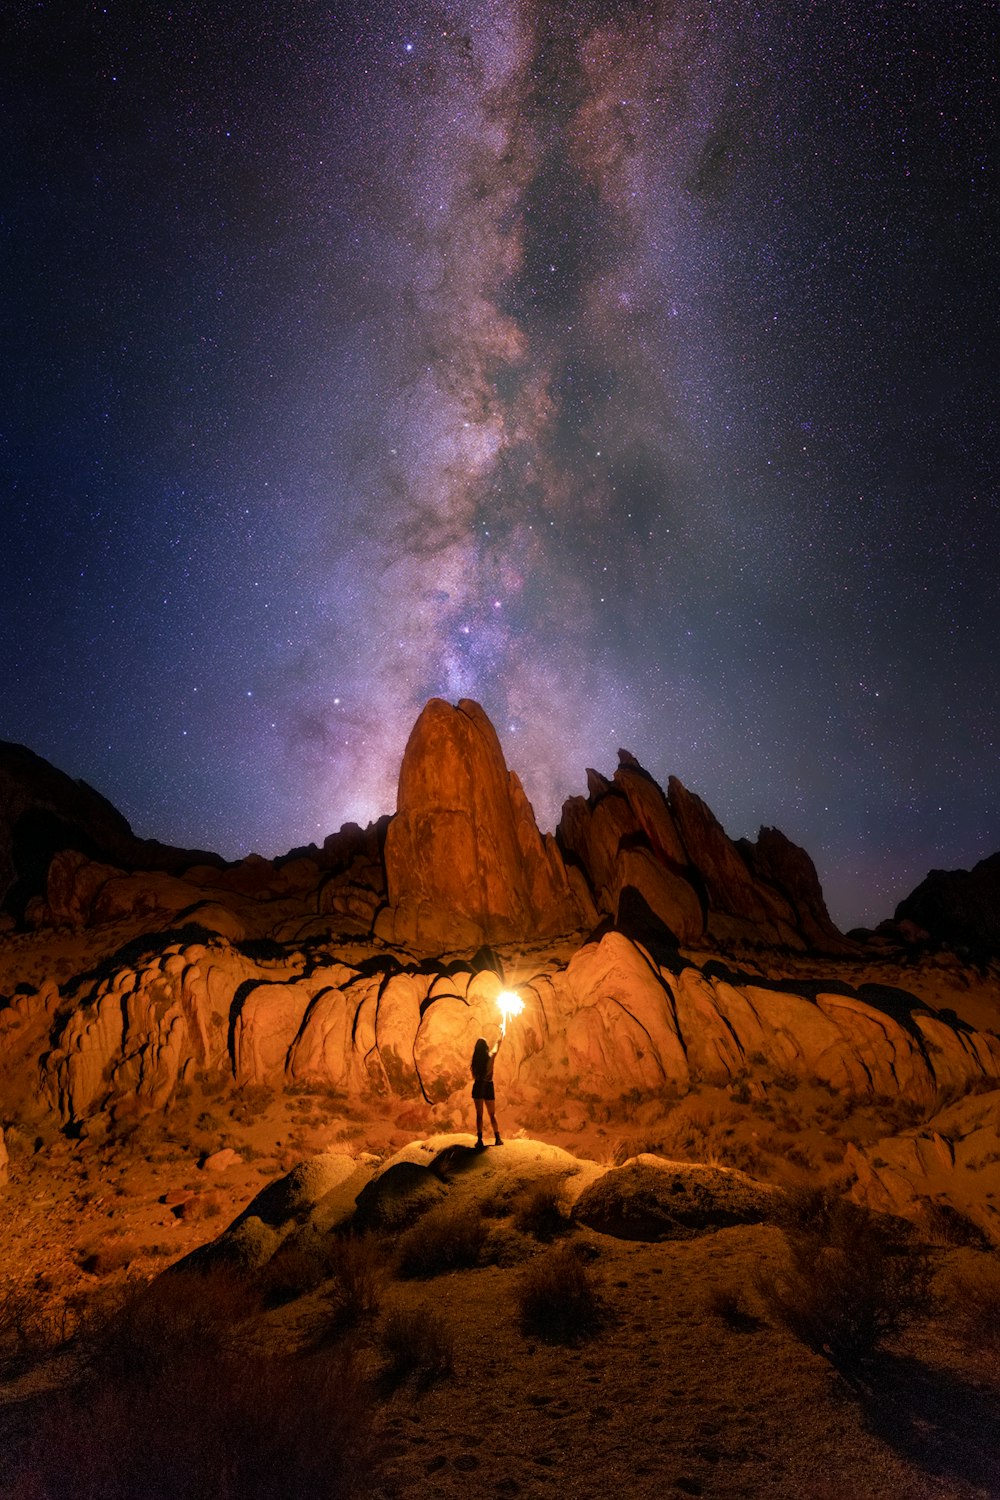 silhueta da pessoa em pé na formação rochosa sob a noite estrelada